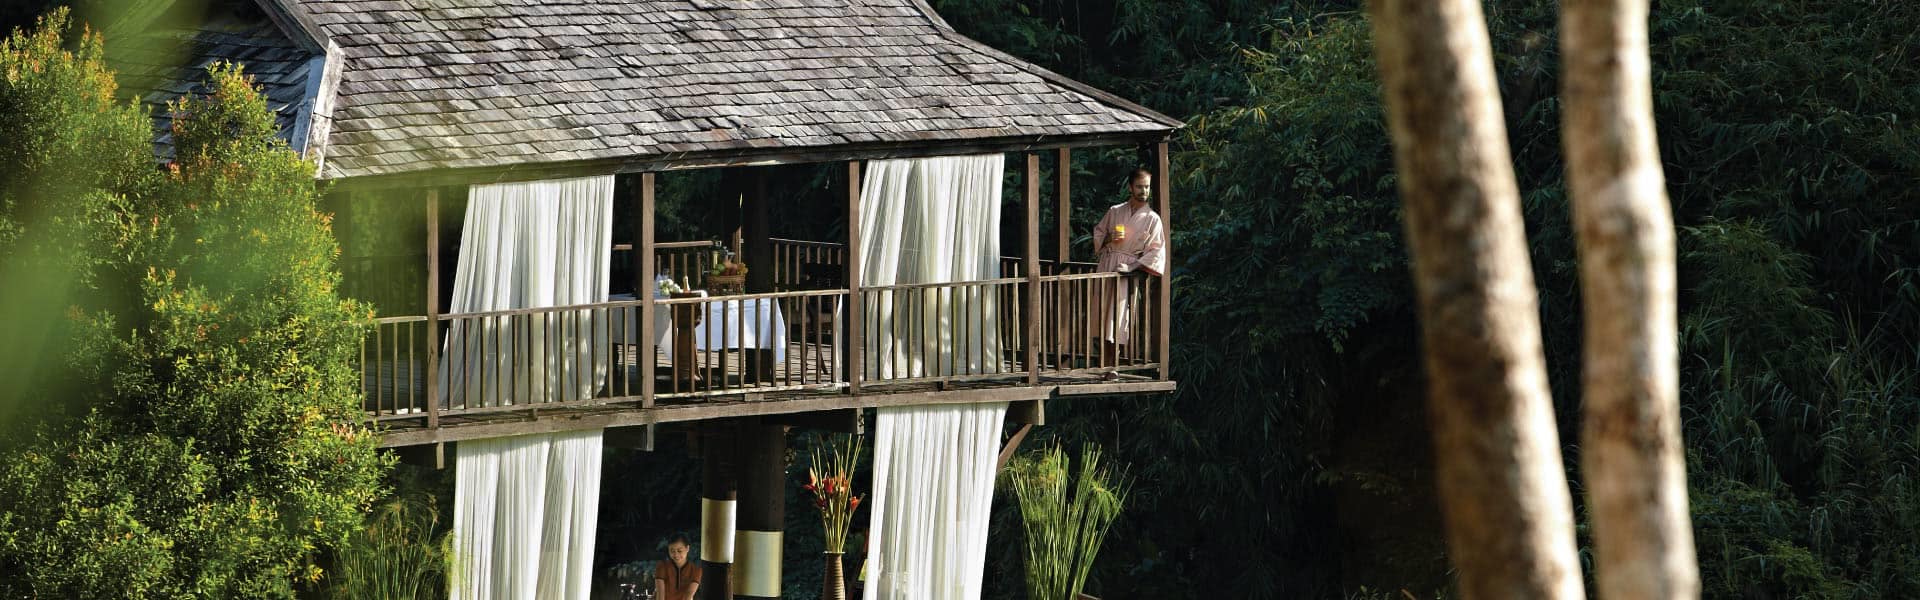 Chiang Rai Spa Spa Facilities At Anantara Golden Triangle